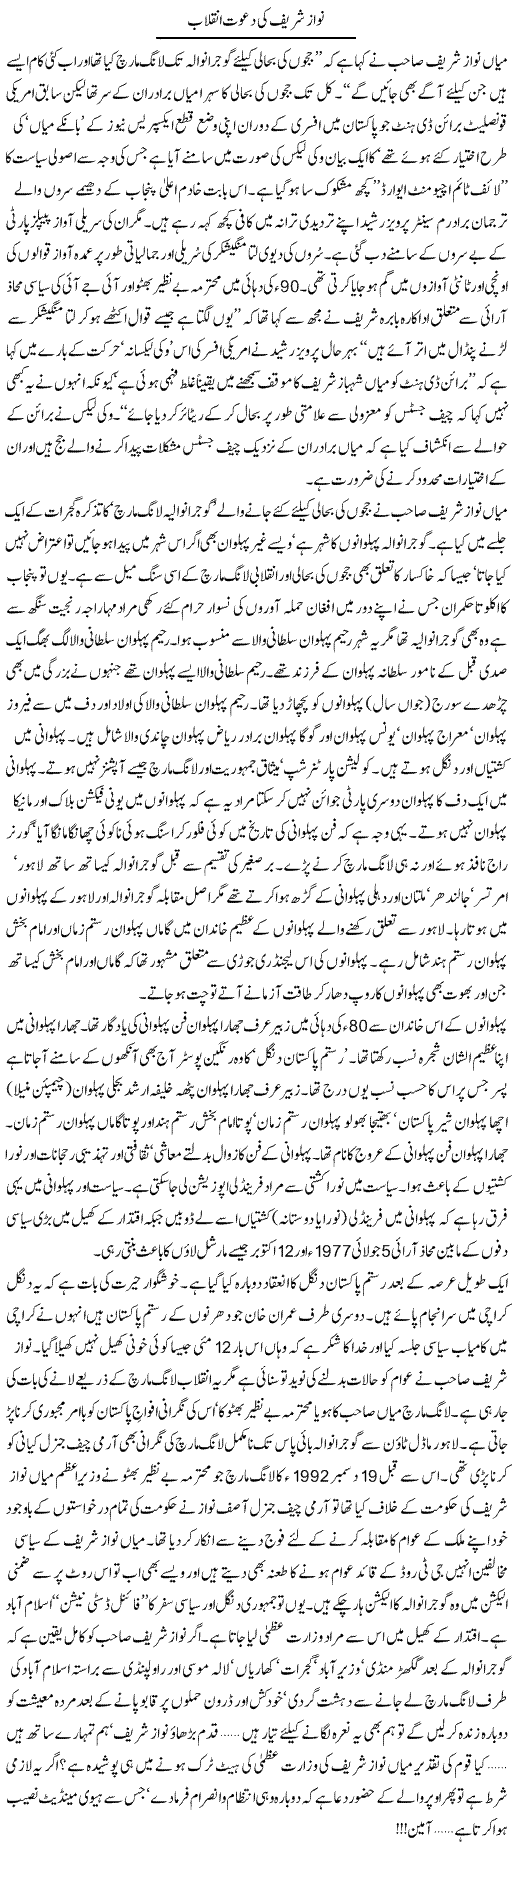 Nawaz Sharif Express Column Tahir Sarwar 23 May 2011